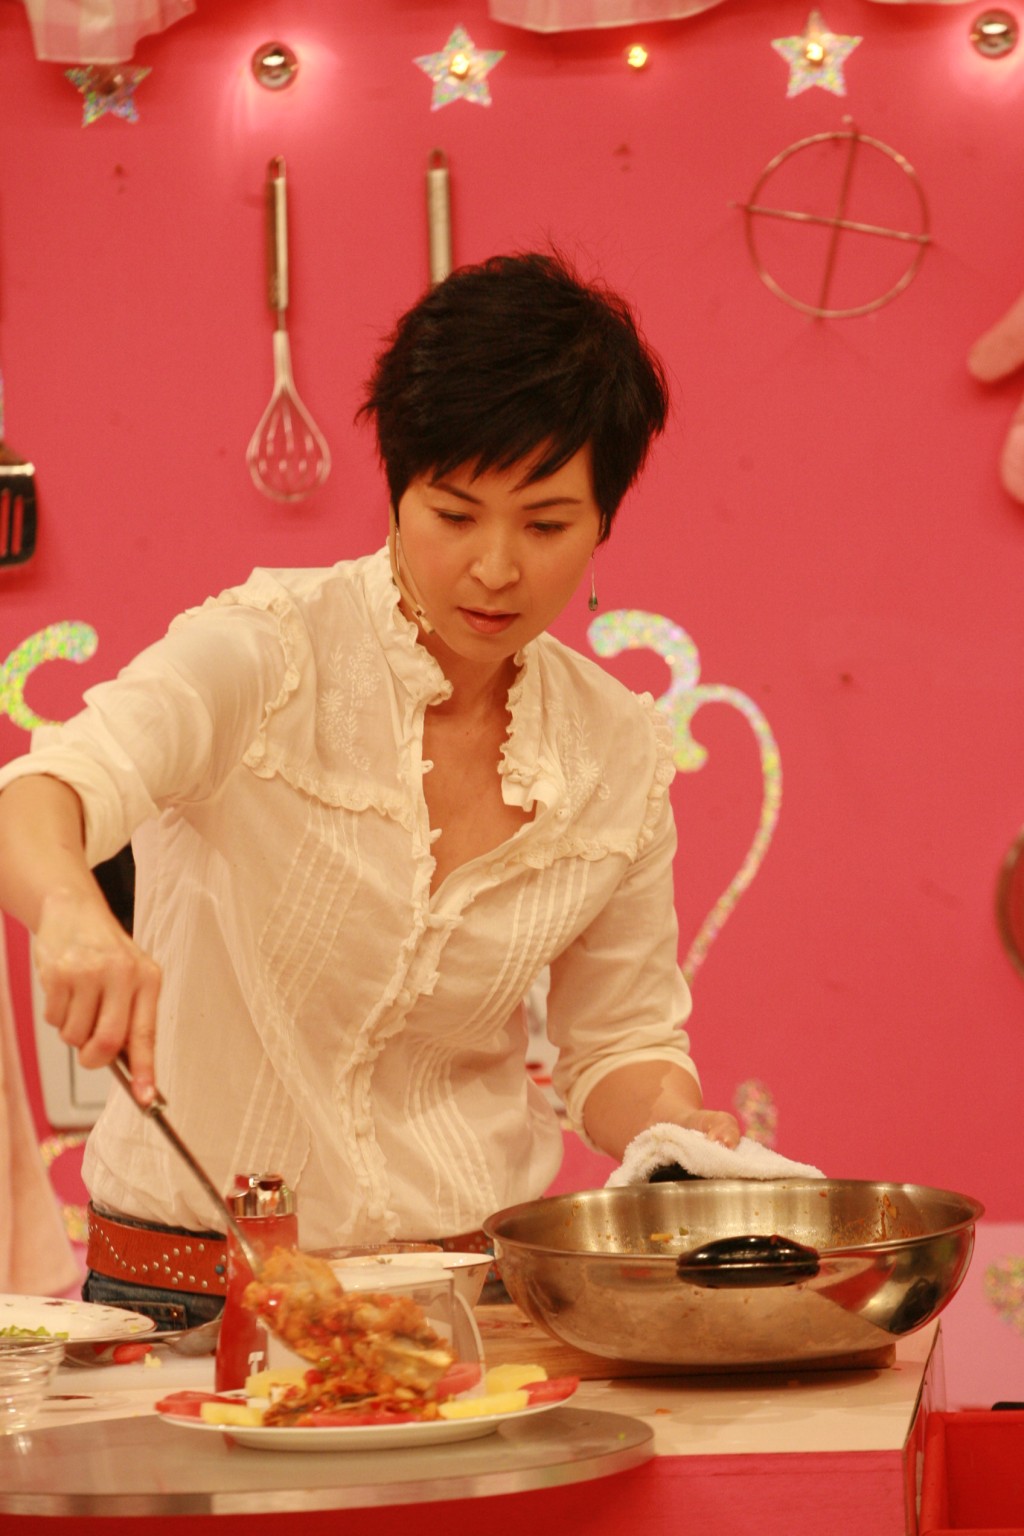  苏玉华曾于综艺节目《美女厨房》大展厨艺，因而被冠以“美女厨神”之称。